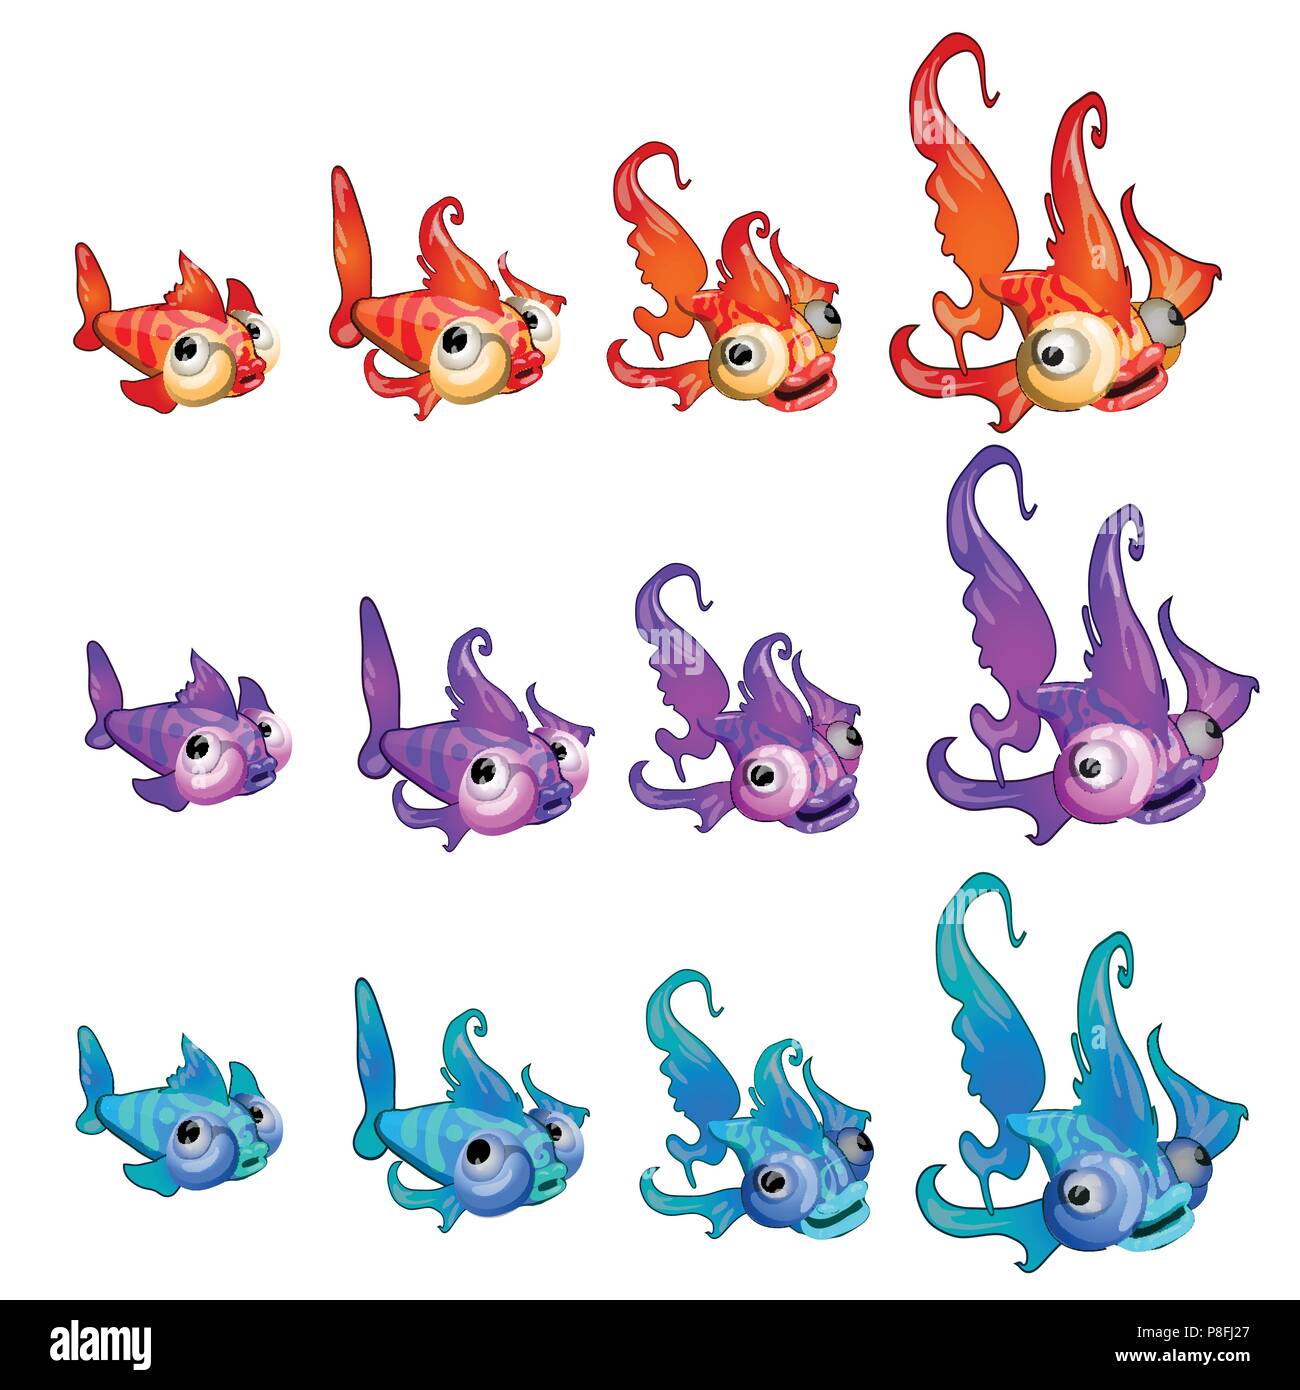 Serie di fasi di una crescente del cartoon pesci colorati isolato su uno sfondo bianco. Vettore di Cartoon close-up illustrazione. Illustrazione Vettoriale